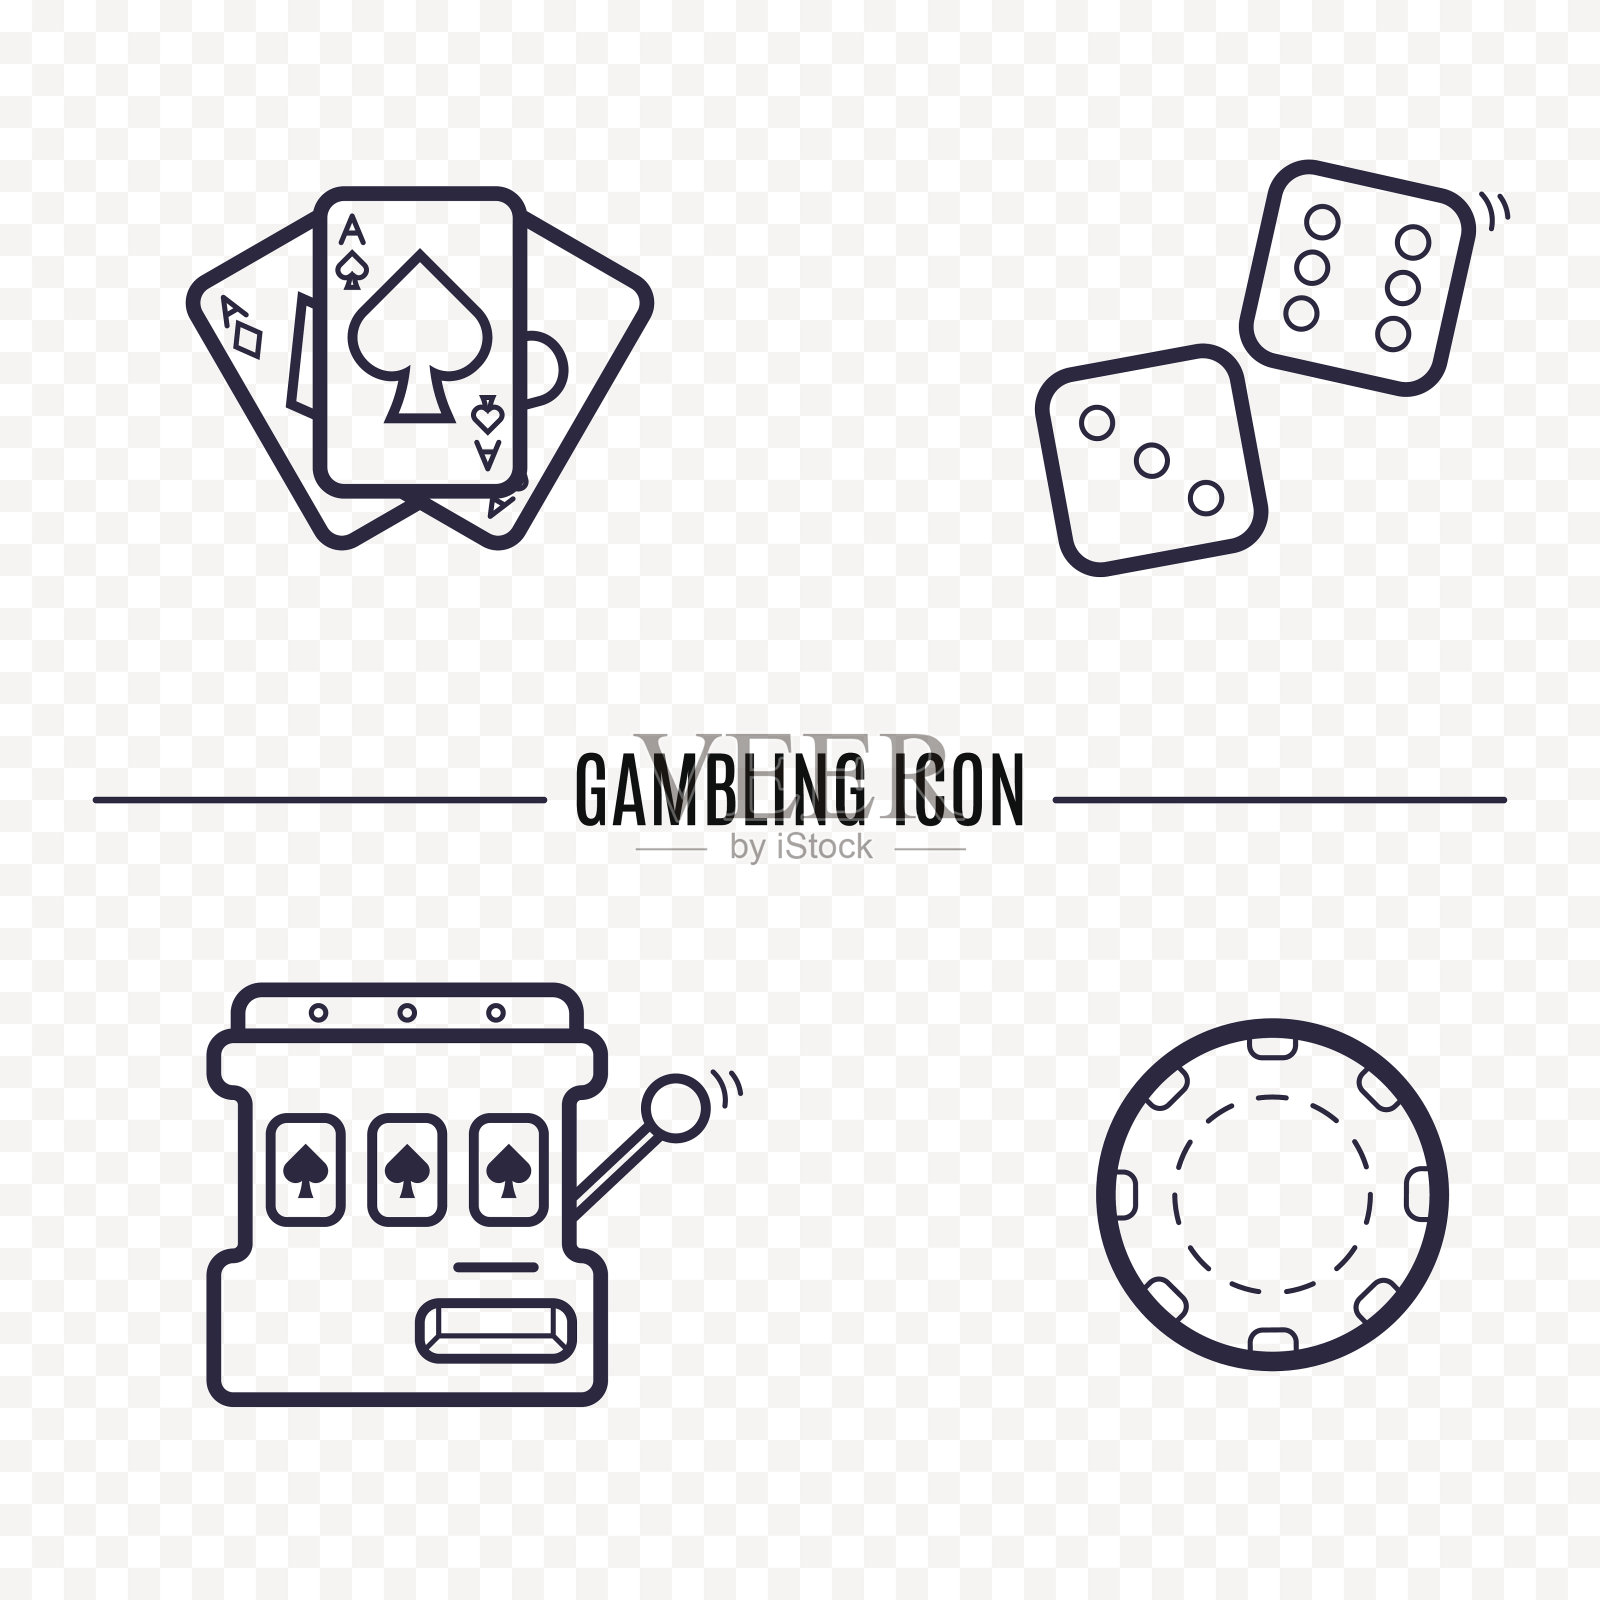 赌博简单的线条图标。卡片，骰子，赌场芯片，老虎机薄线性标志。概述赌场游戏的简单概念为网站，信息图表，移动应用程序。插画图片素材